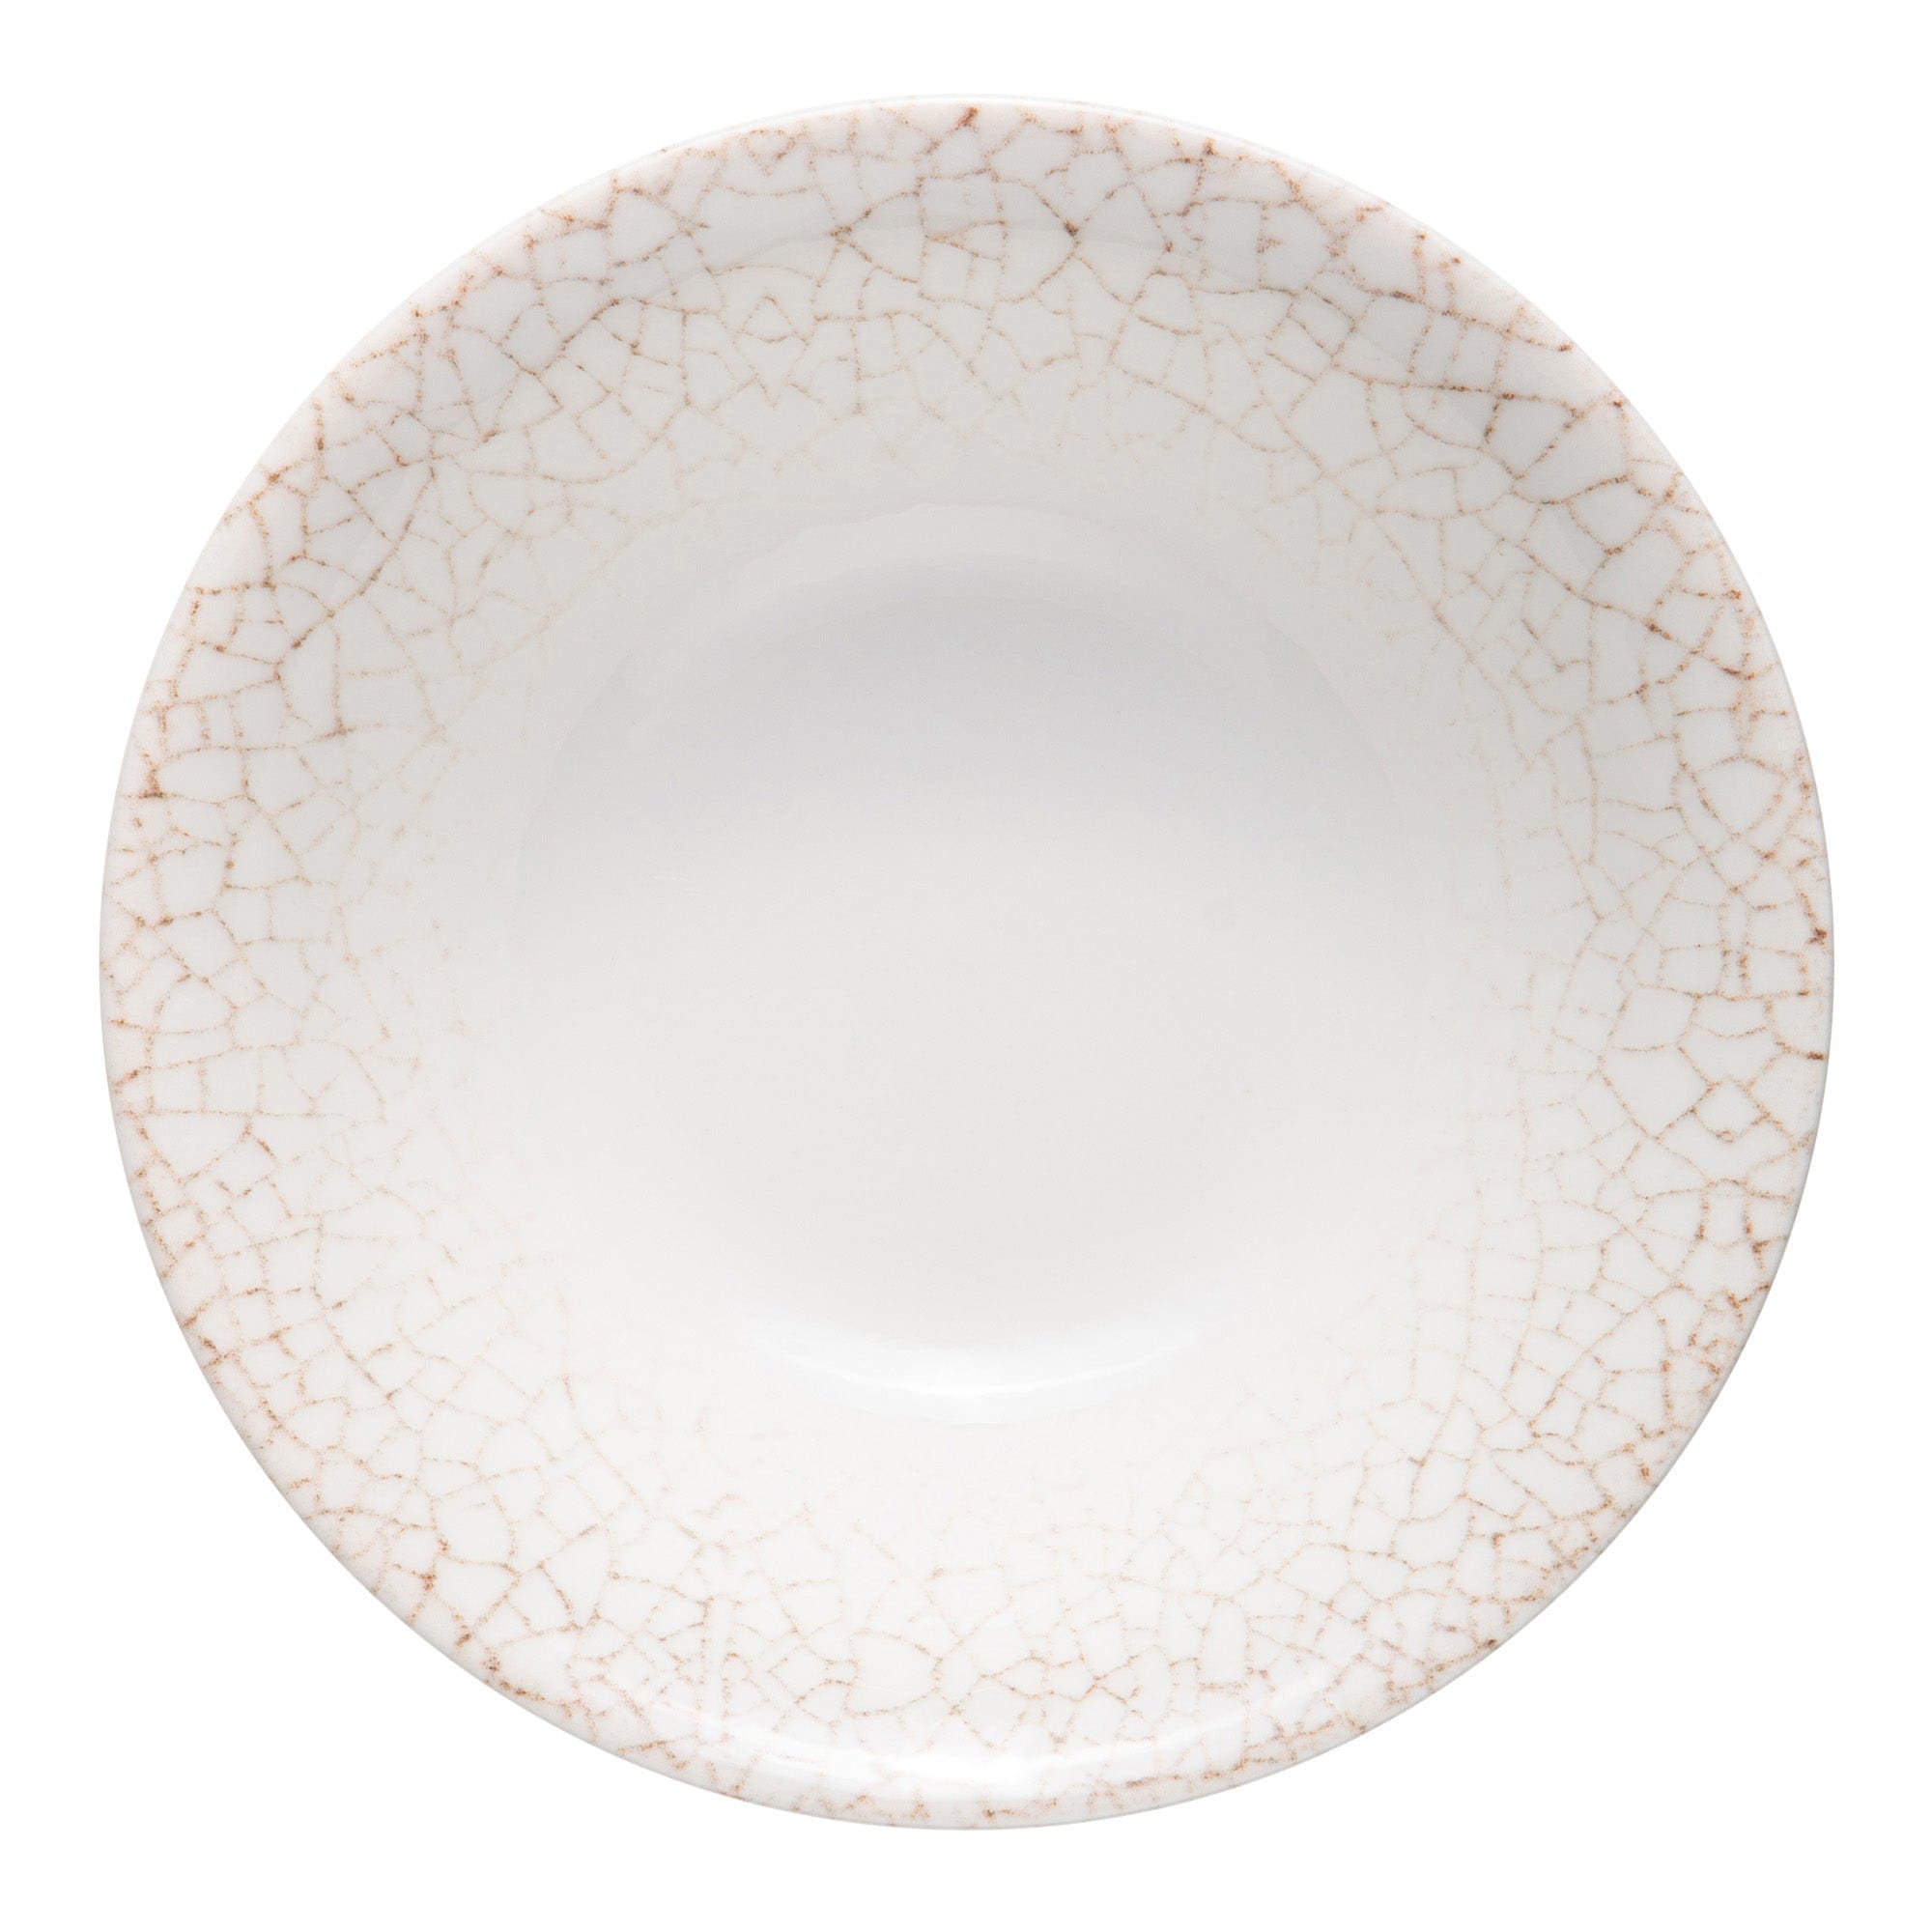 Deserto Porcelain Plate 6.3" / 14oz